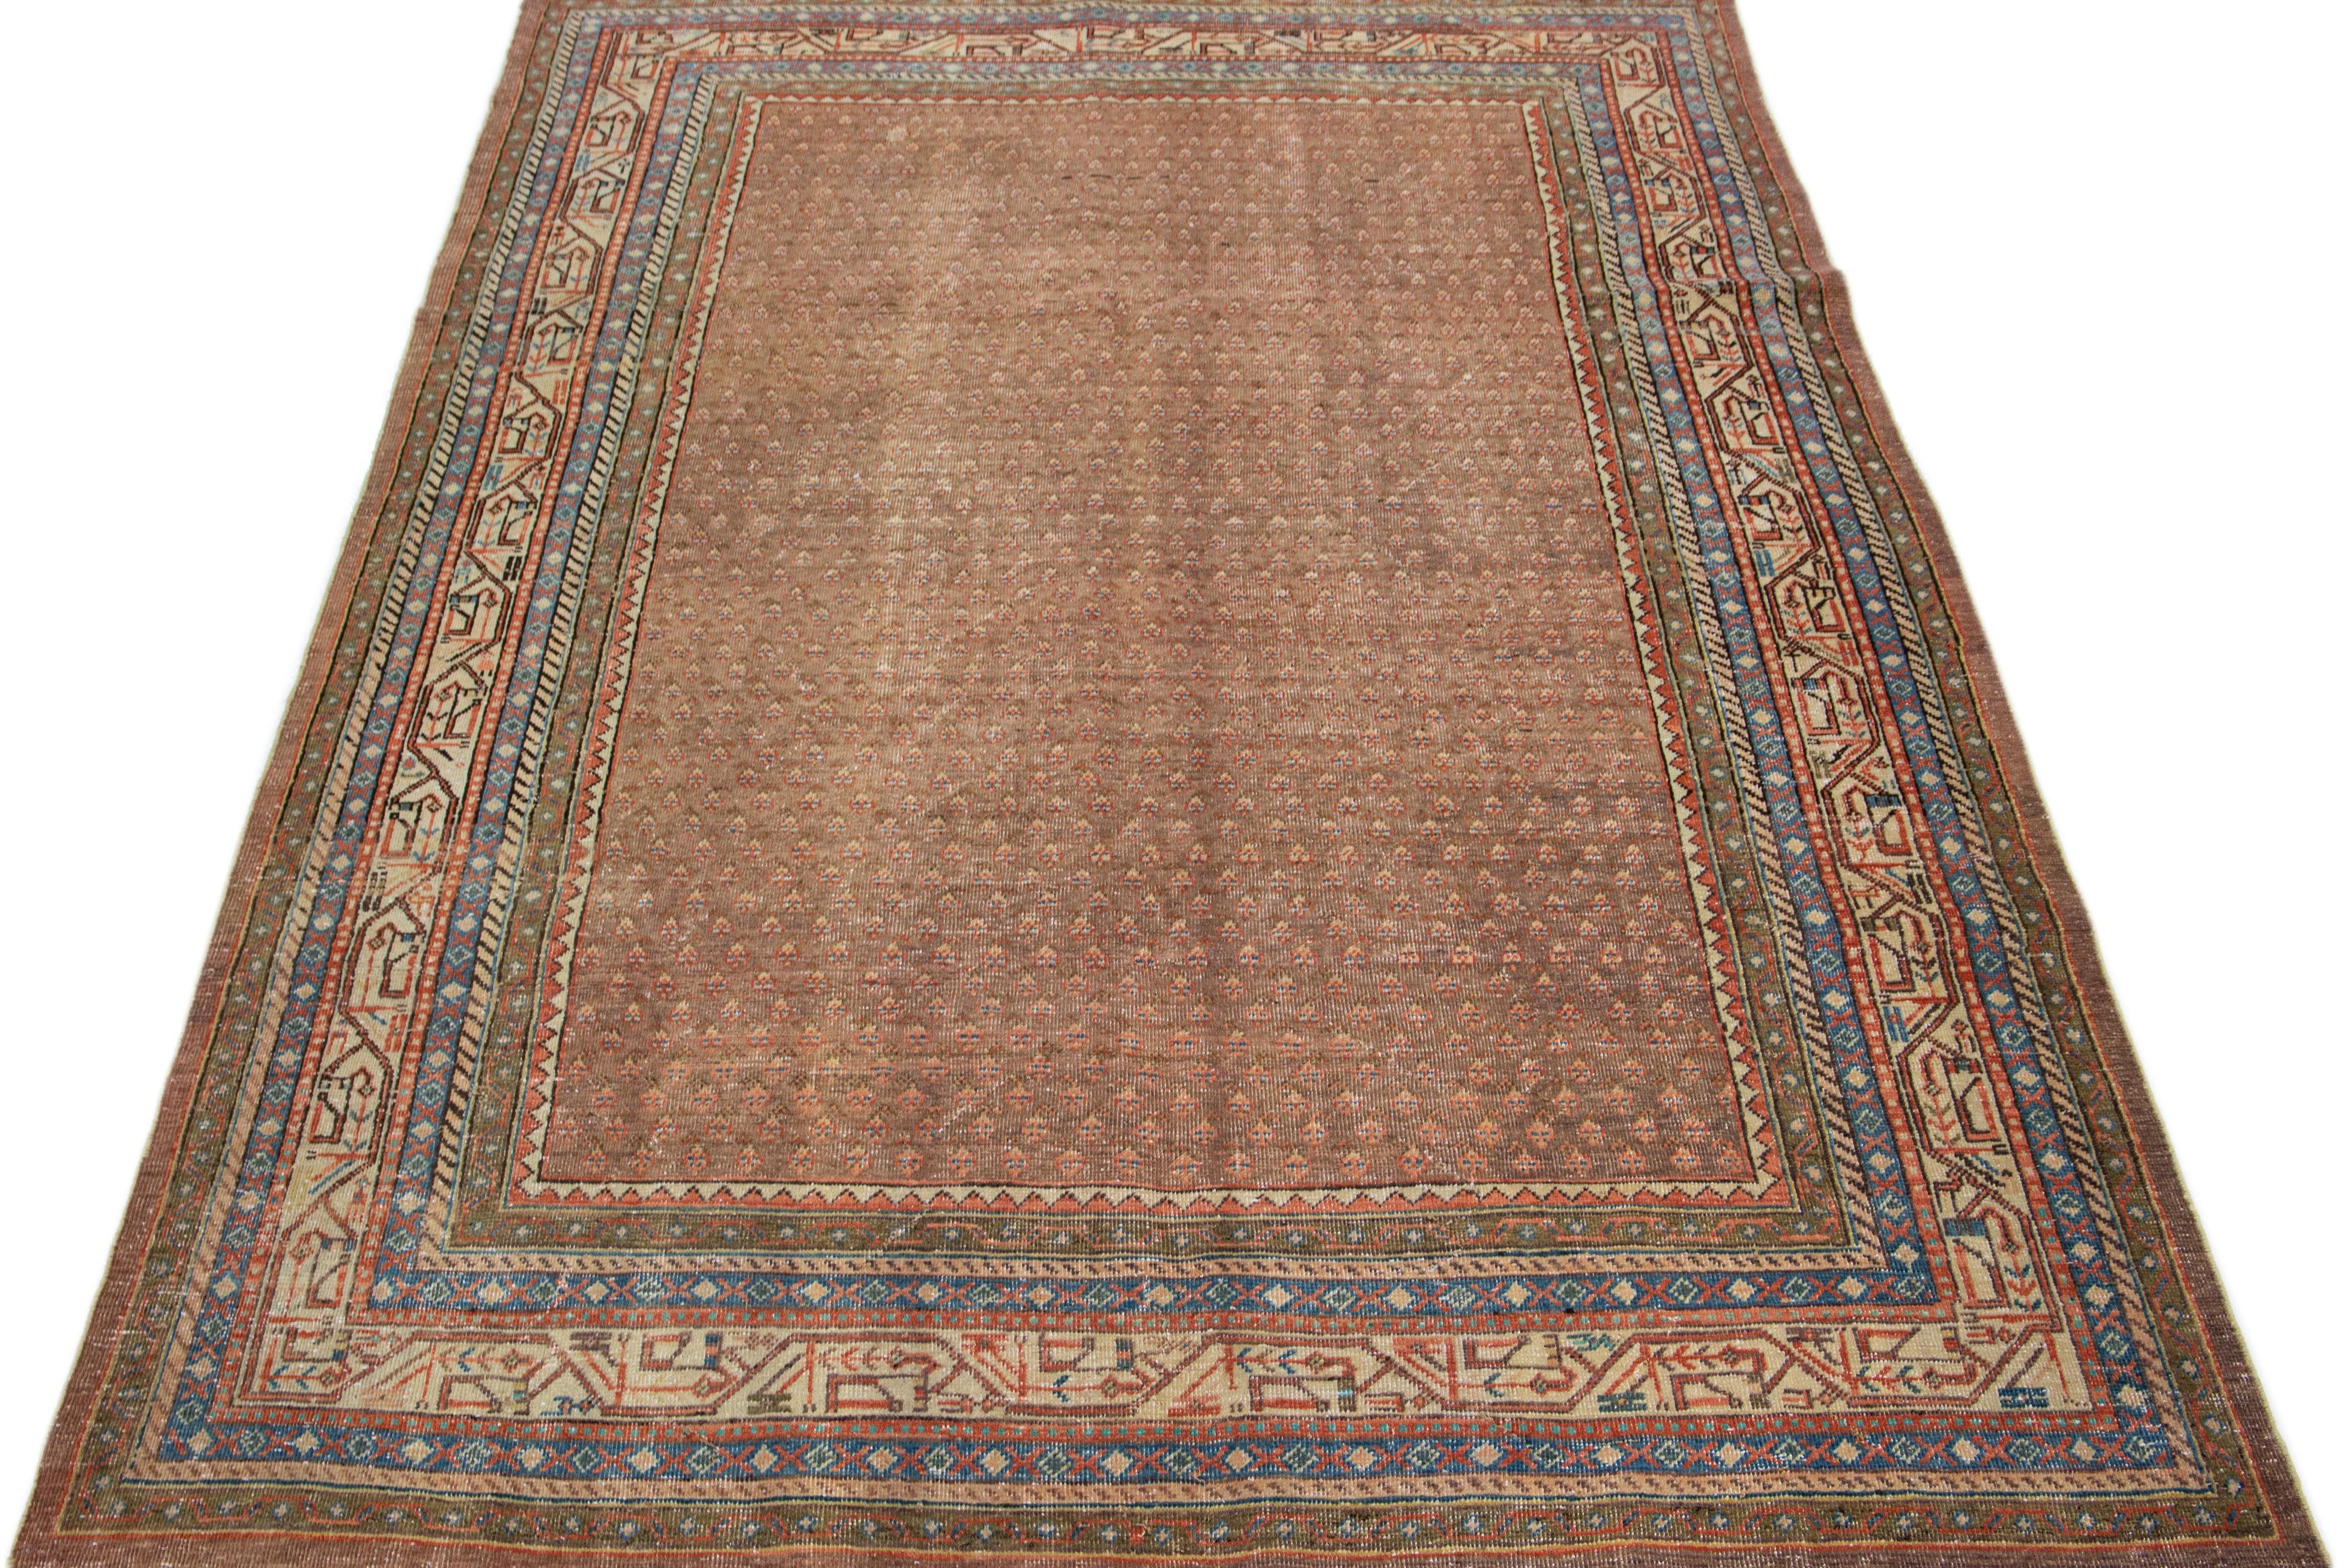 Dieser exquisite antike Hamadan-Teppich ist aus hochwertiger Wolle handgeknüpft und besticht durch ein beigefarbenes Feld, das durch ein fesselndes Allover-Muster ergänzt wird, das mit braunen, pfirsichfarbenen und blauen Akzenten angereichert